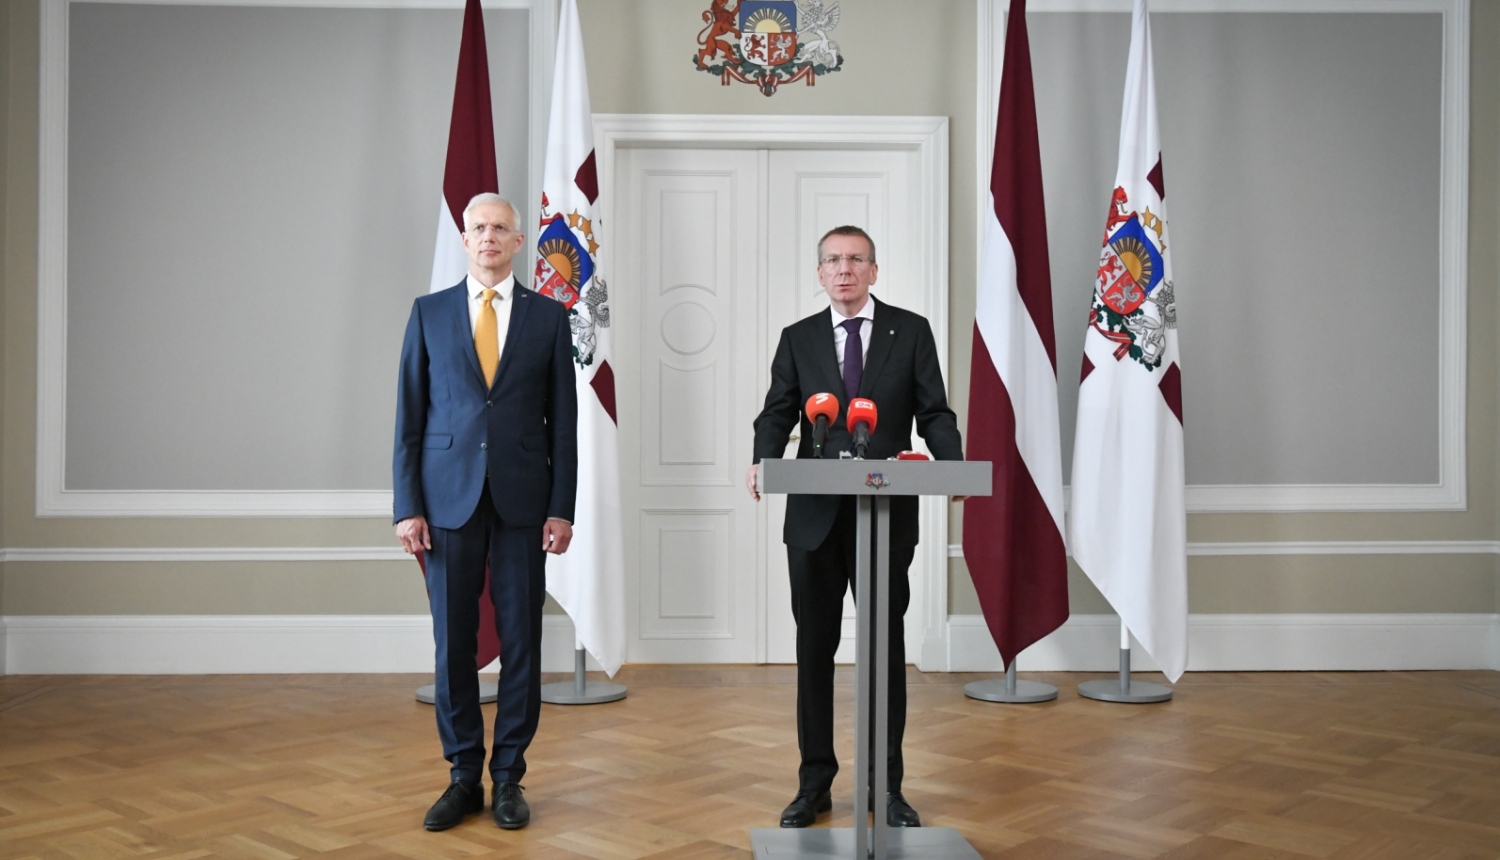 Valsts prezidenta Edgara Rinkēviča tikšanās ar Ministru prezidentu Krišjāni Kariņu